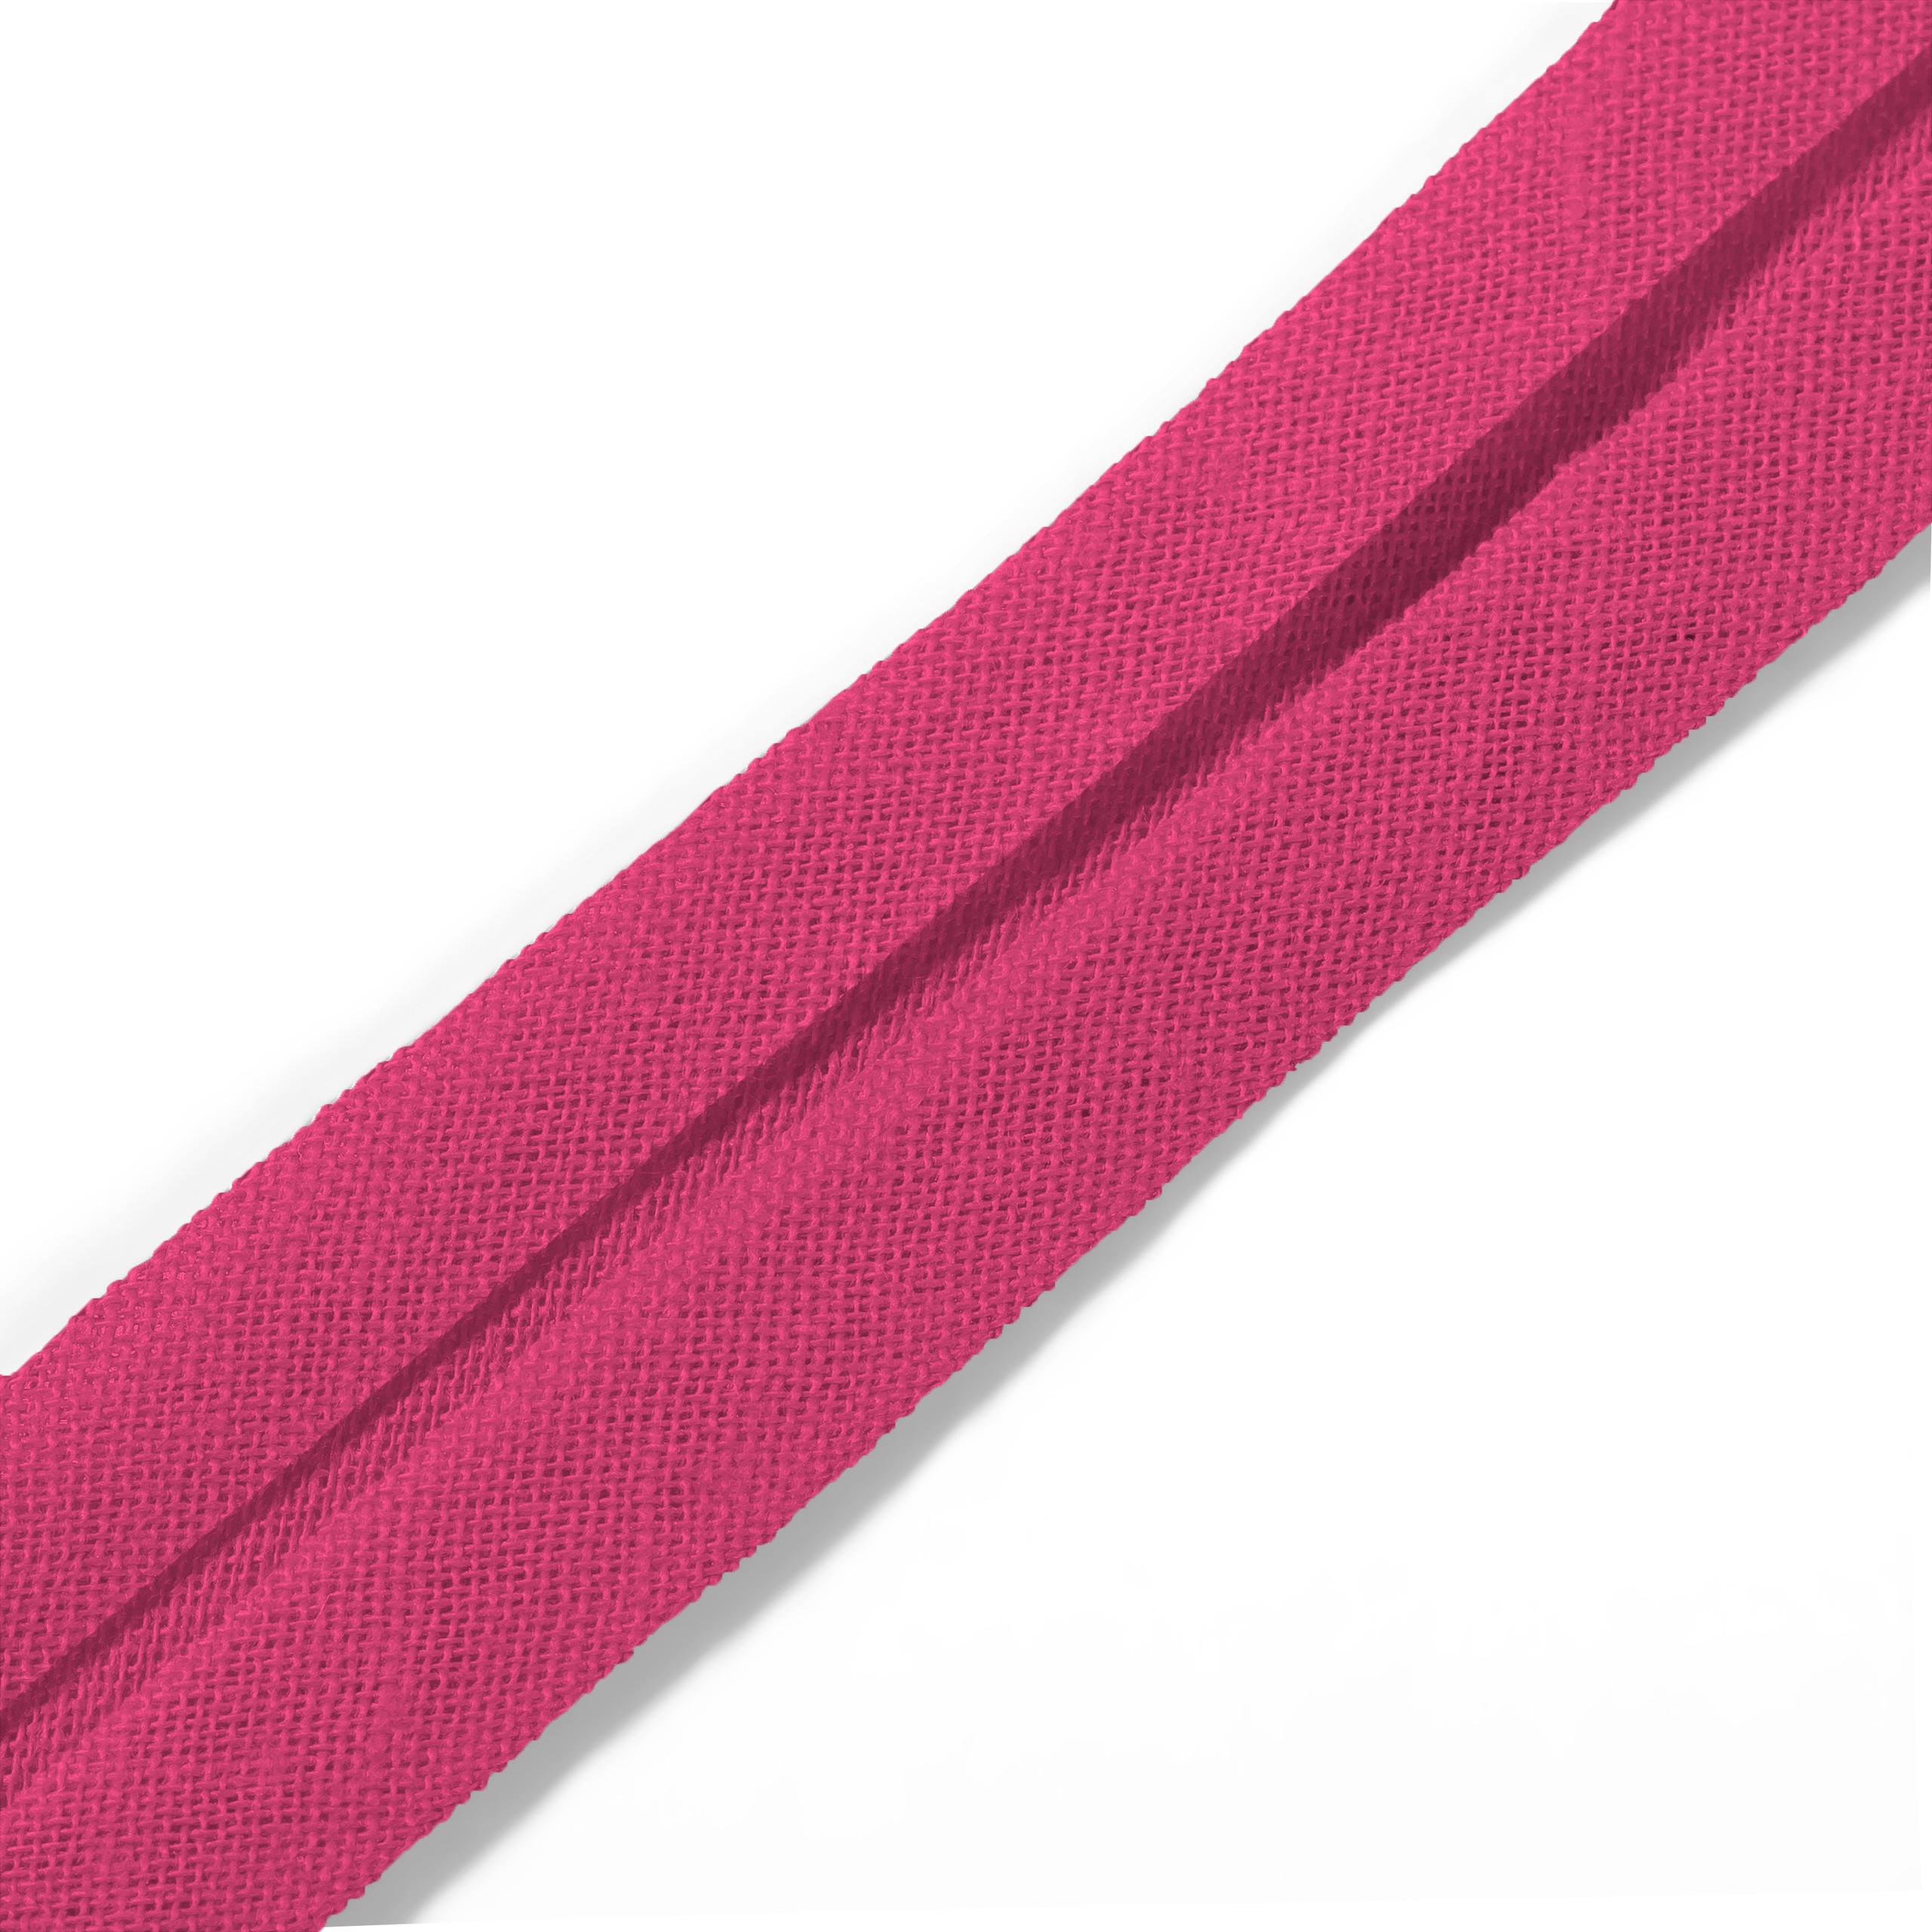 Schrägband 40/20 mm pink, Meterware, Baumwolle, Prym, Einfassband